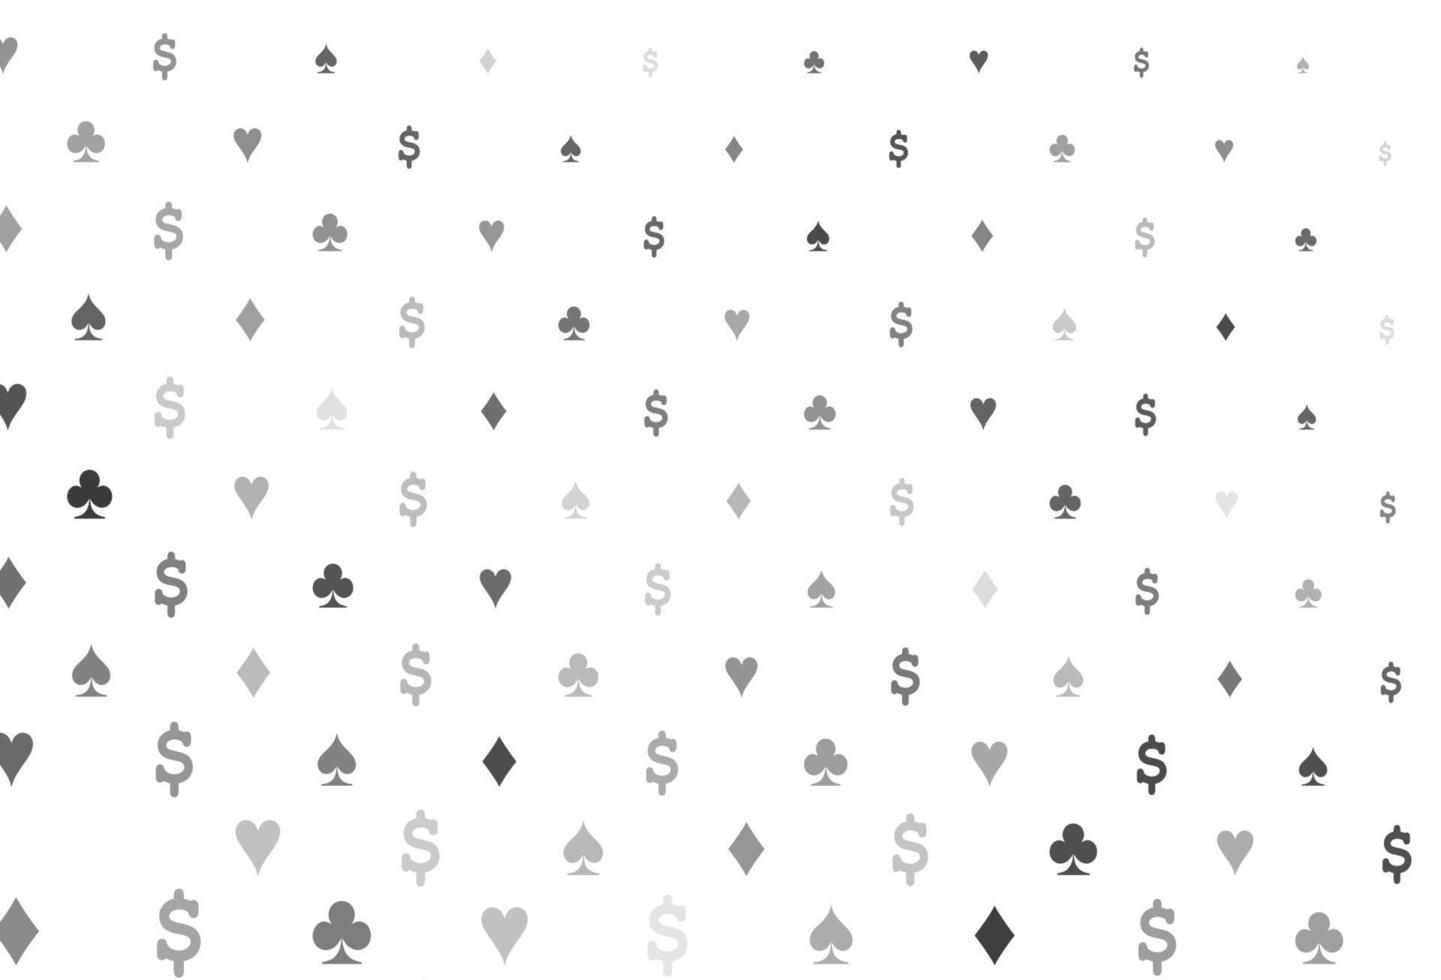 layout de vetor cinza claro prata com elementos de cartas.